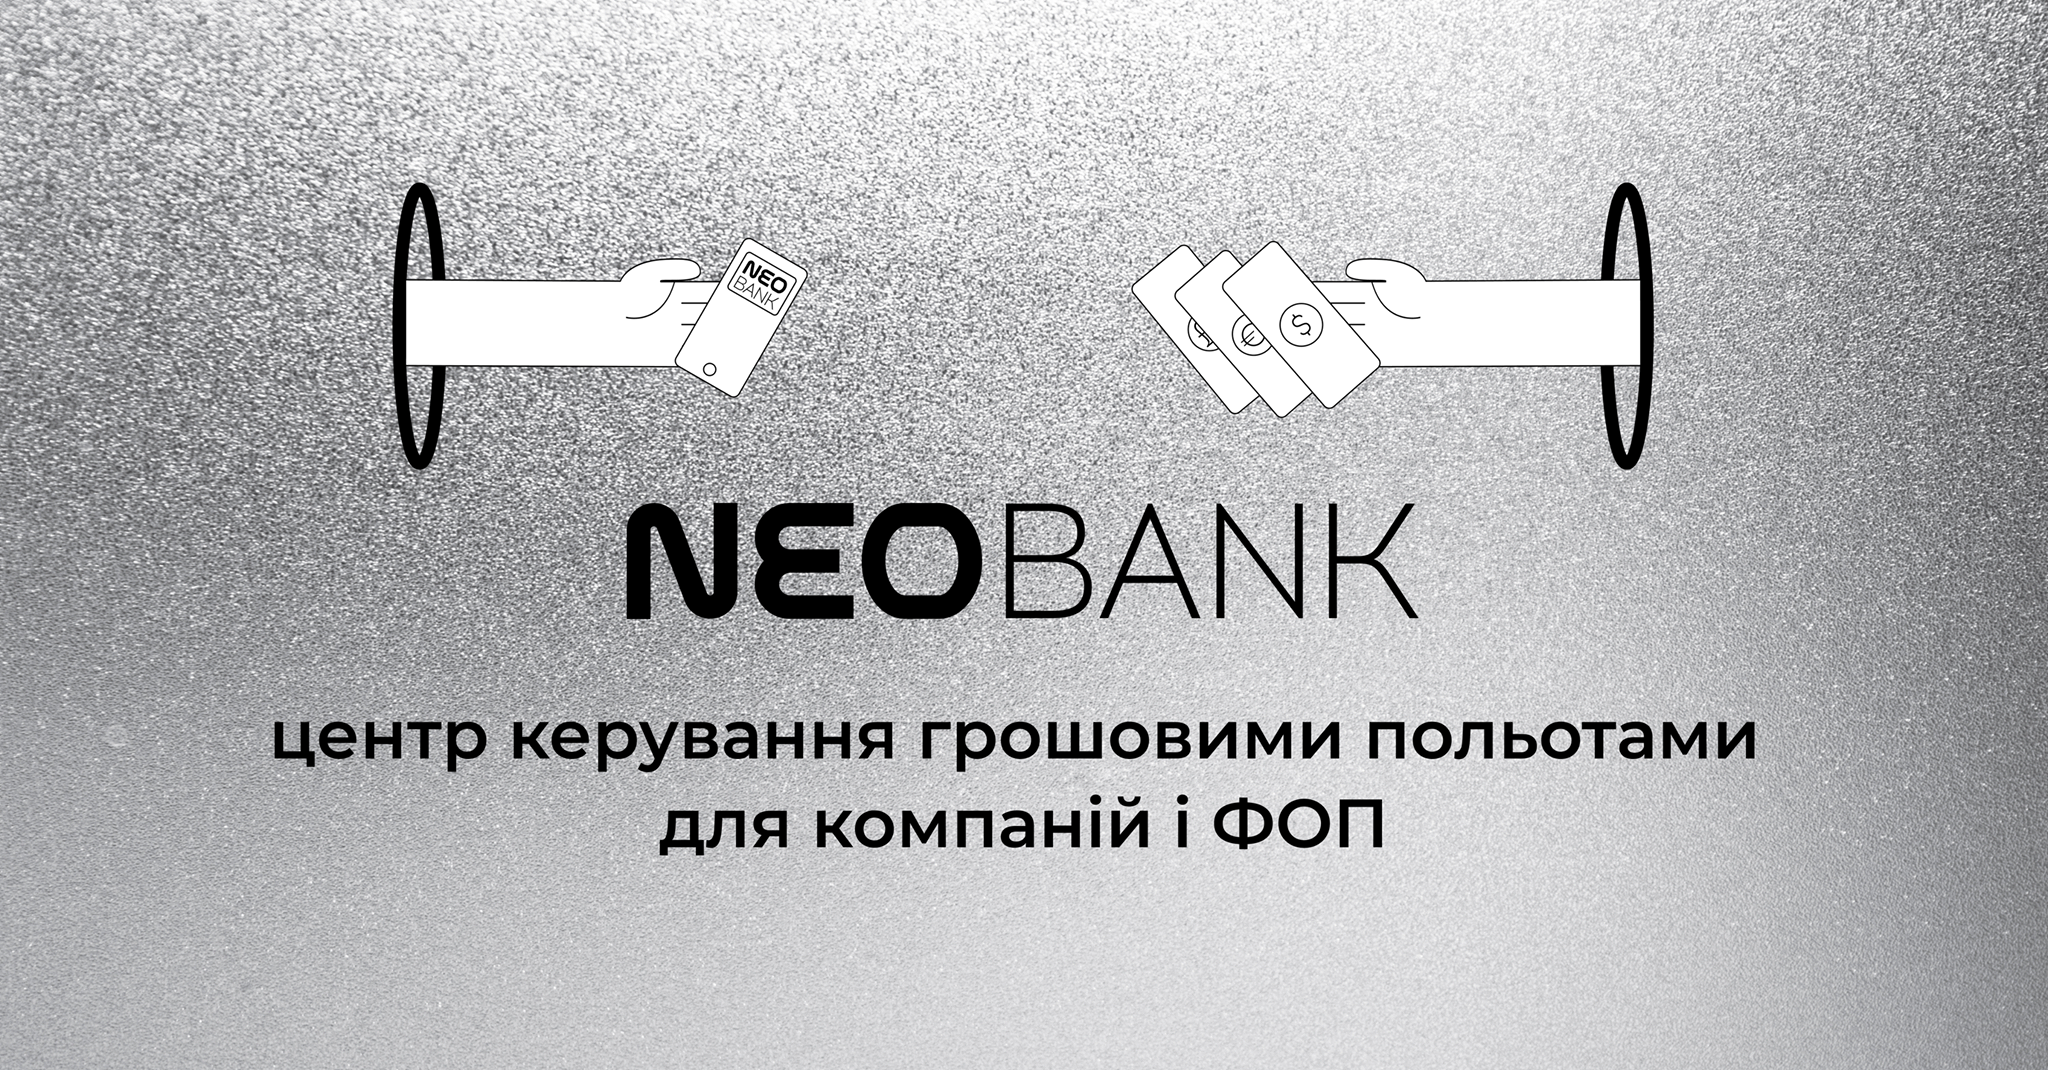 Цифровой банк NEOBANK для бизнеса запустился в бета-режиме